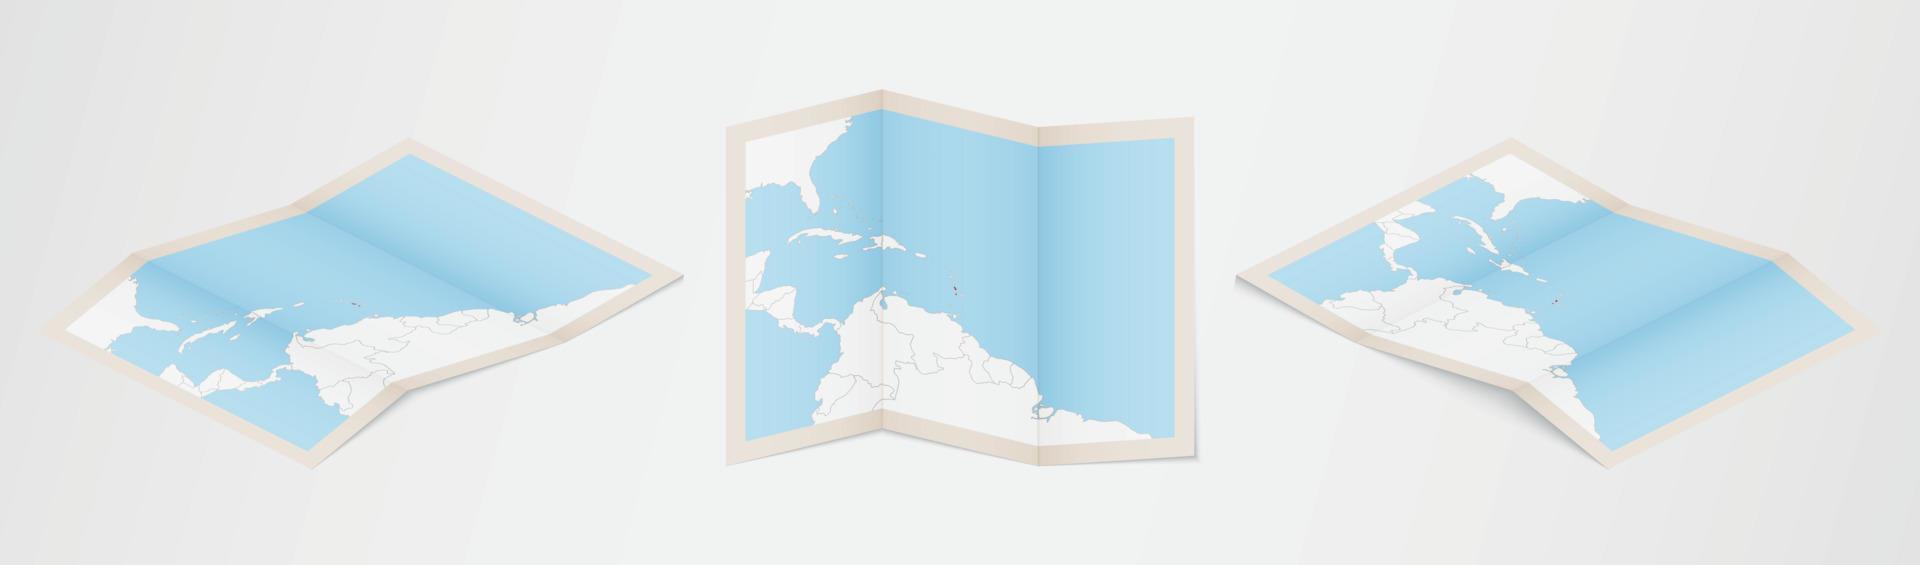 mapa dobrado de São Cristóvão e Nevis em três versões diferentes. vetor